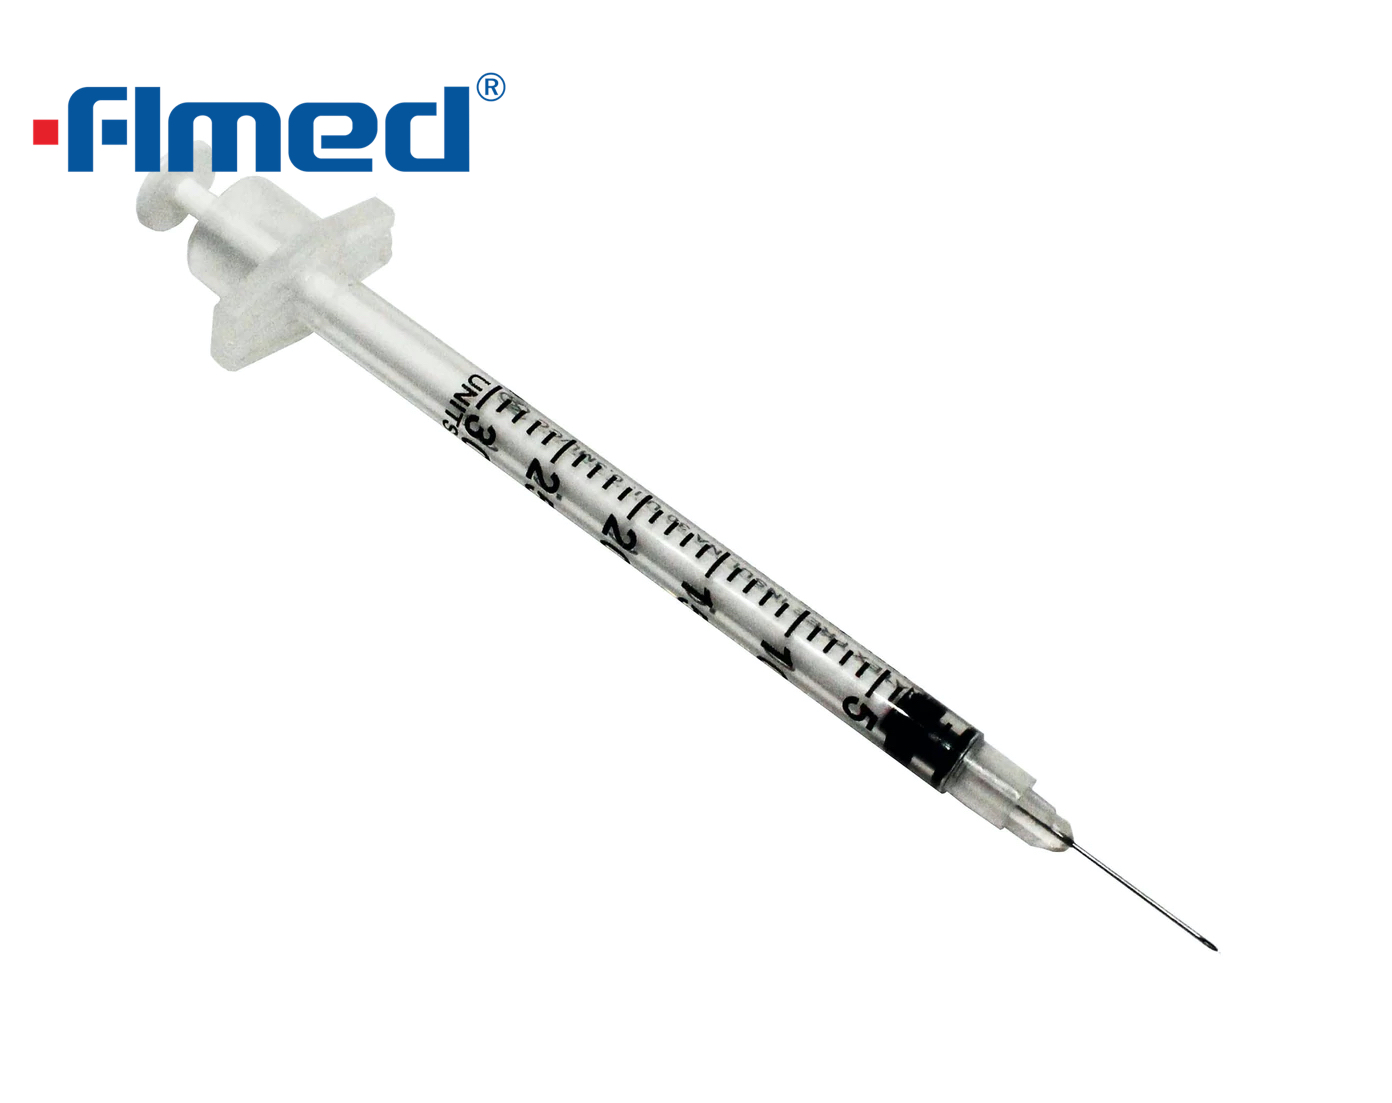 0,3 ml de insulina seringa e agulha 30g x 8mm (30g x 5/16 "polegada)